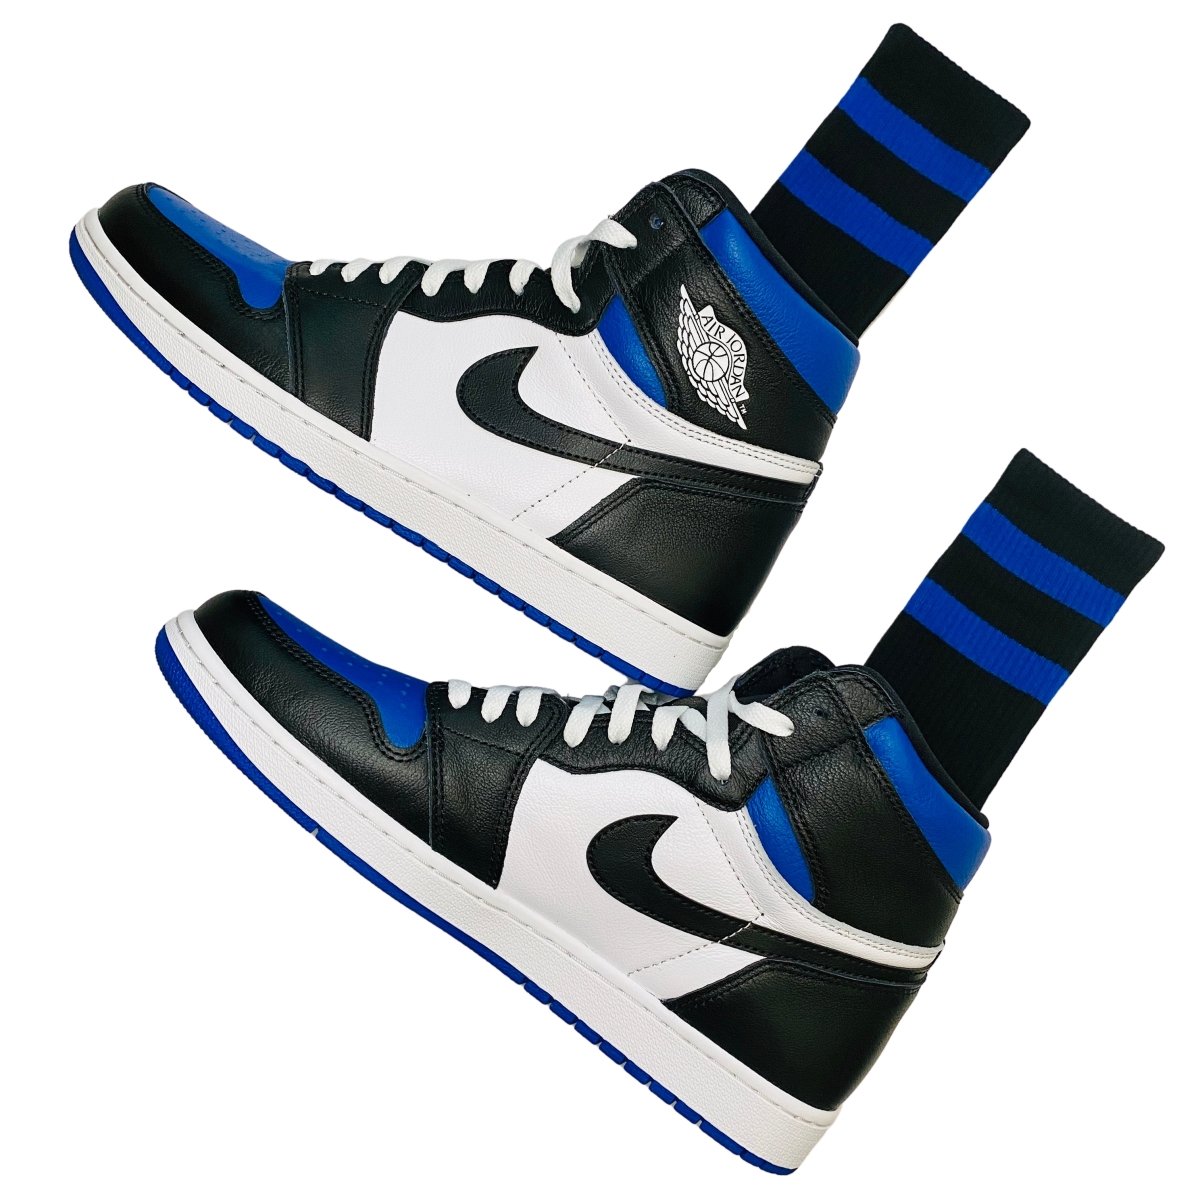 blue jordans socks